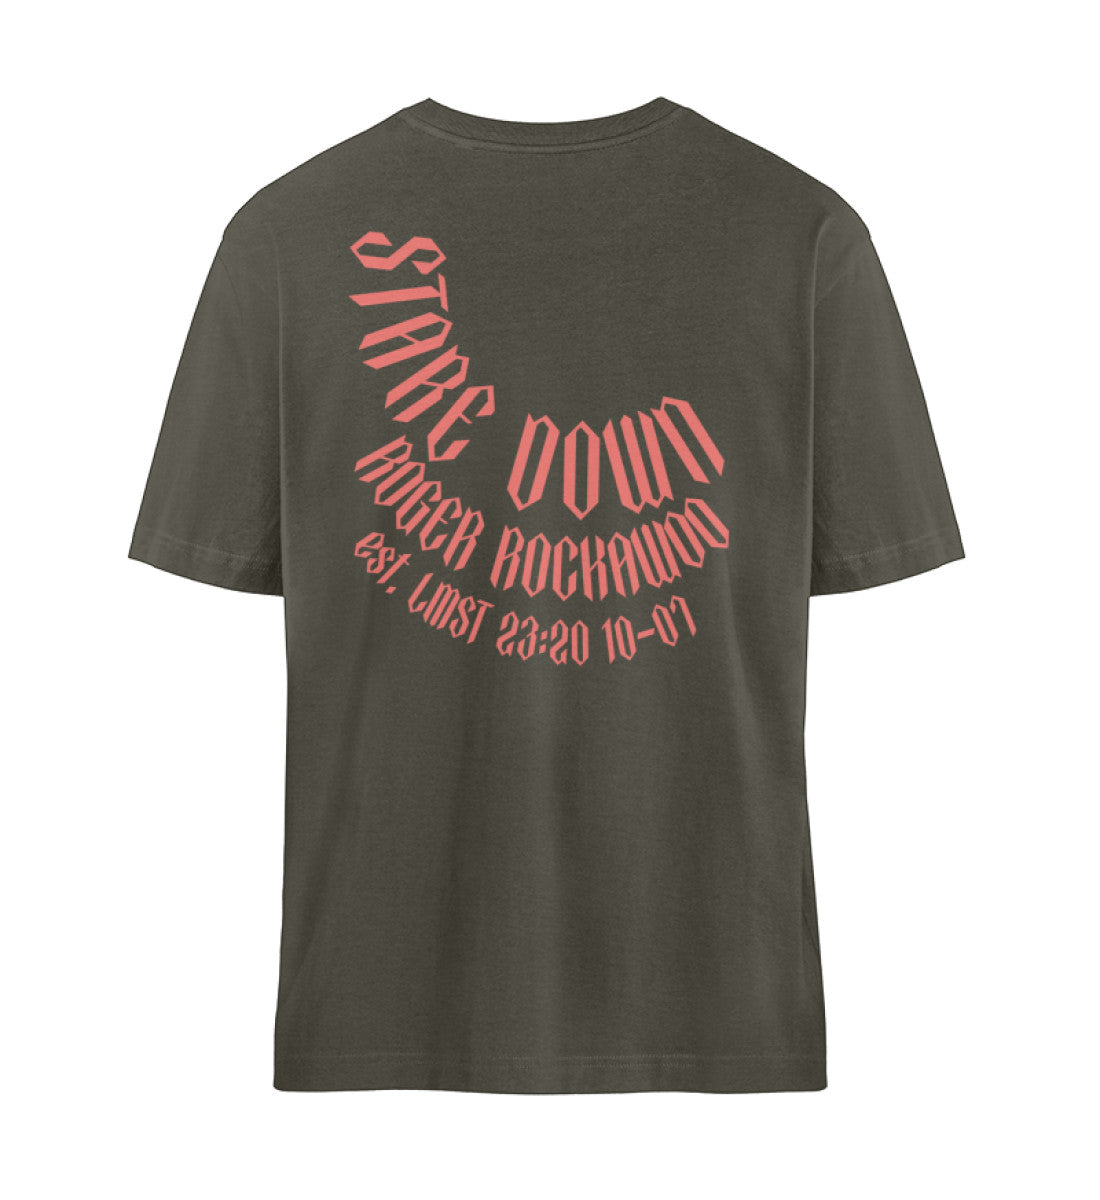 Khaki T-Shirt Unisex Relaxed Fit für Frauen und Männer bedruckt mit dem Design der Roger Rockawoo Kollektion Boxing Stare Down unstoppable relentless determined